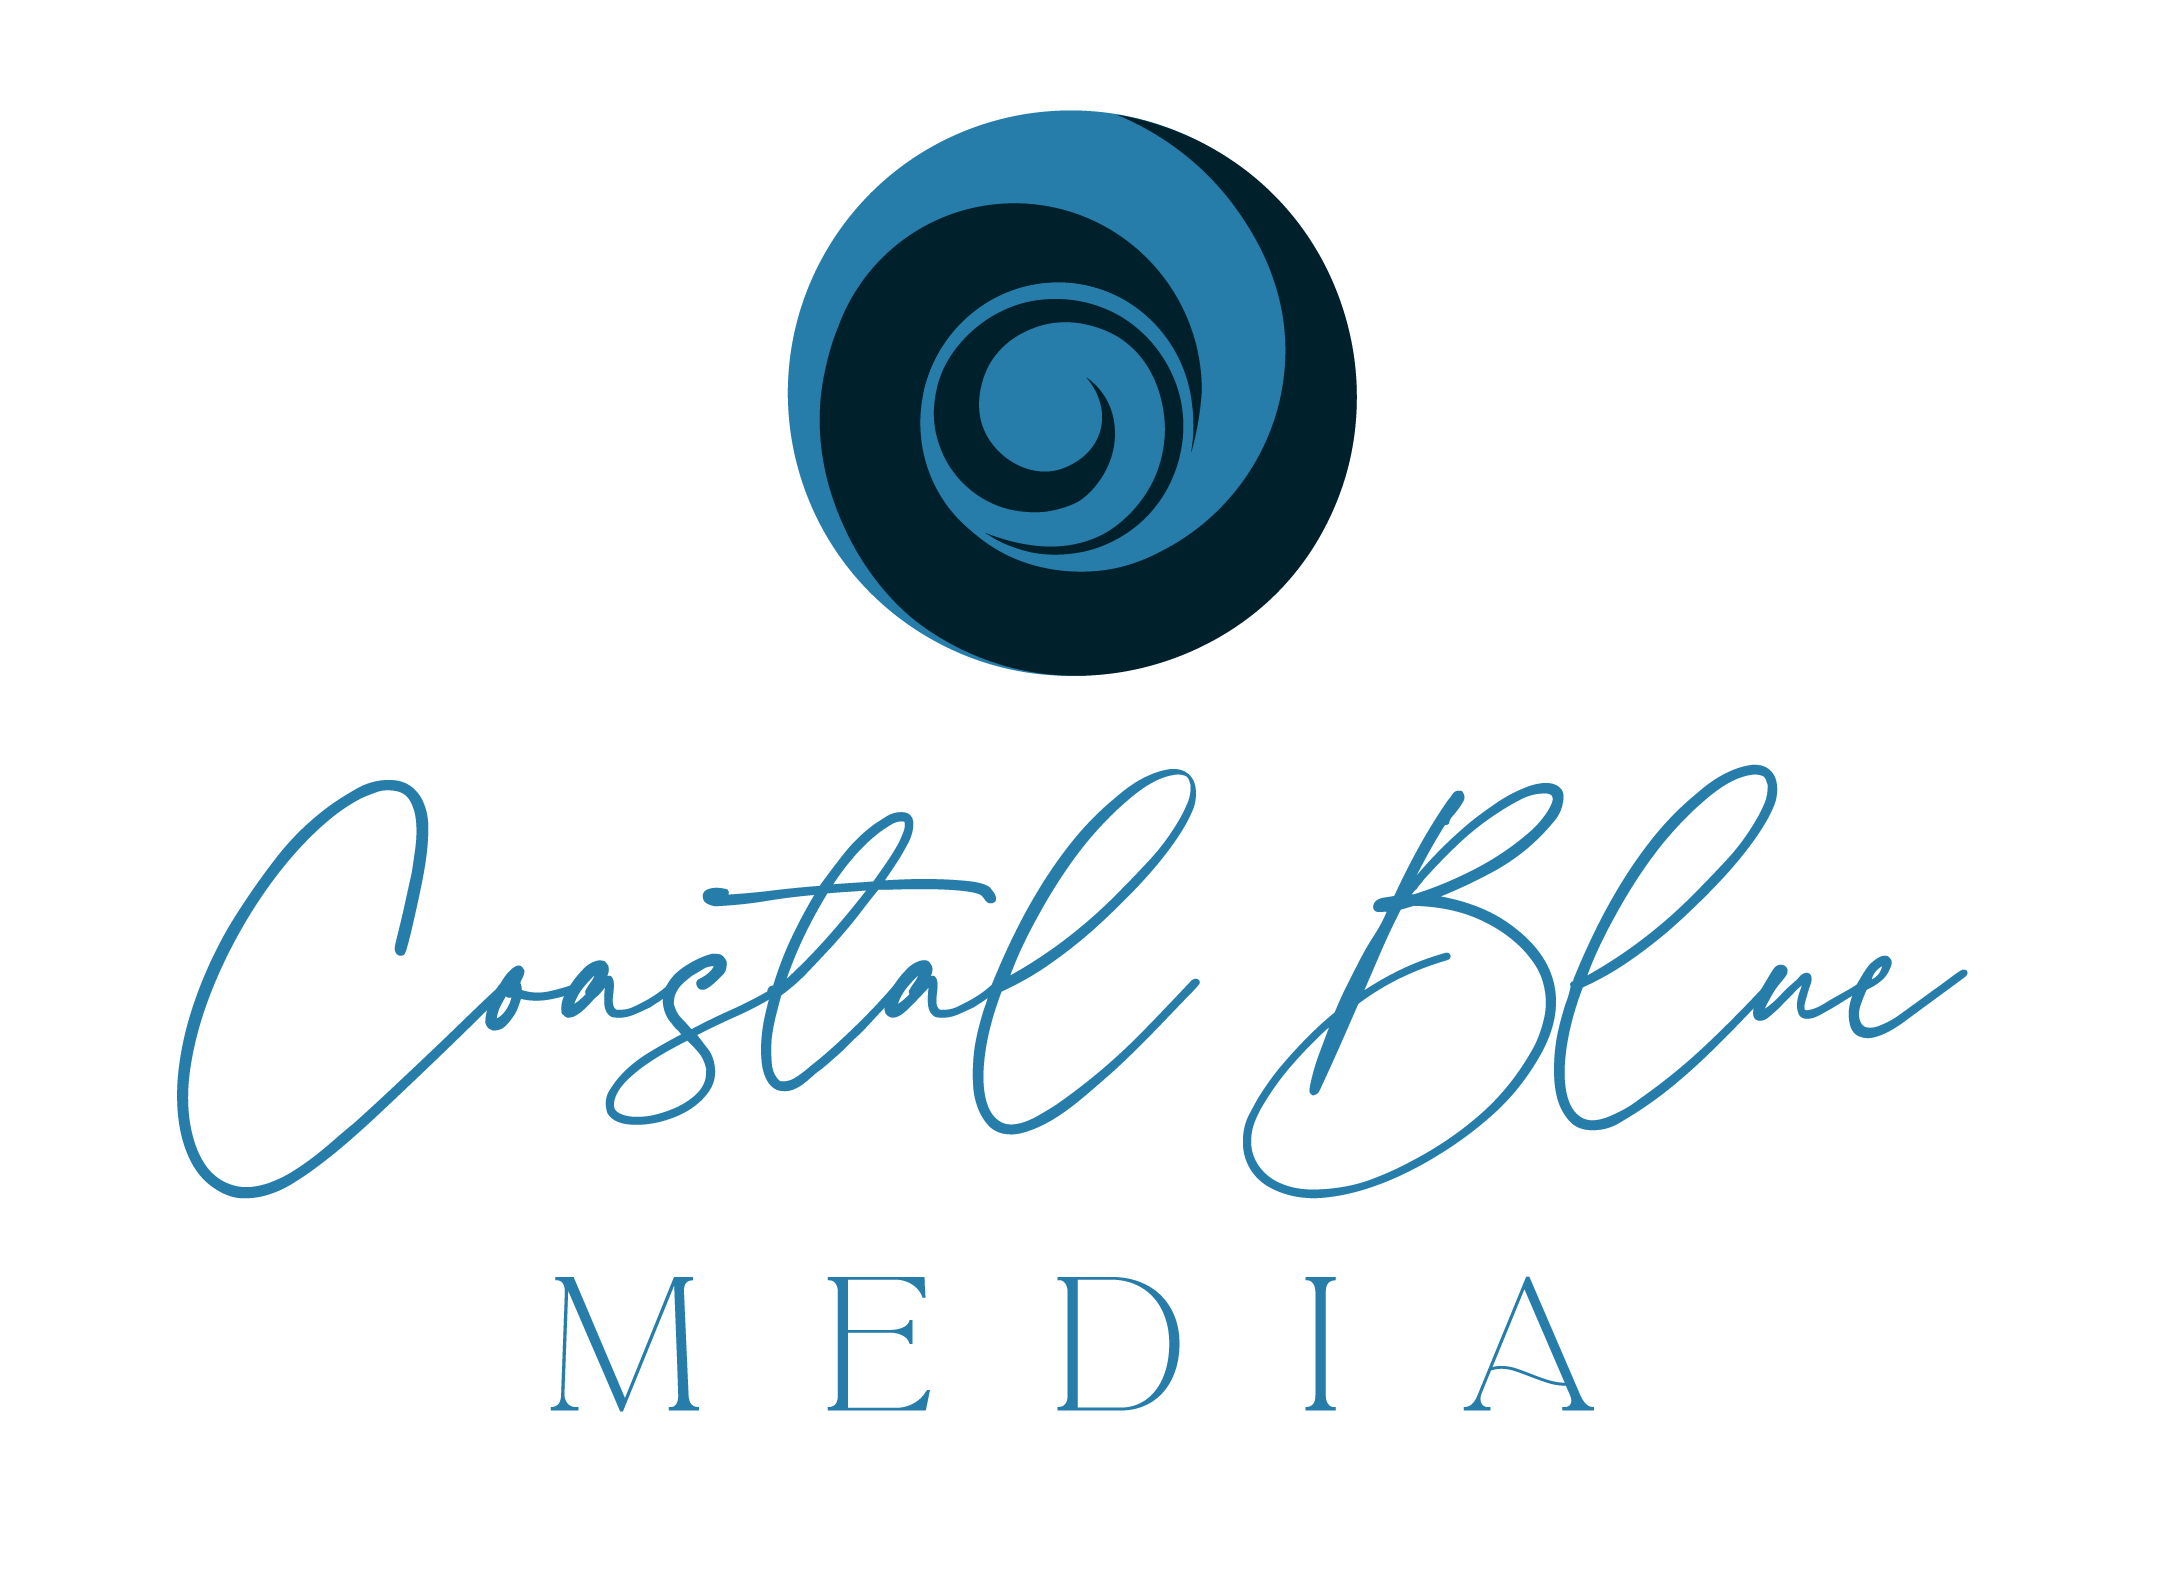 coastal blue media logo